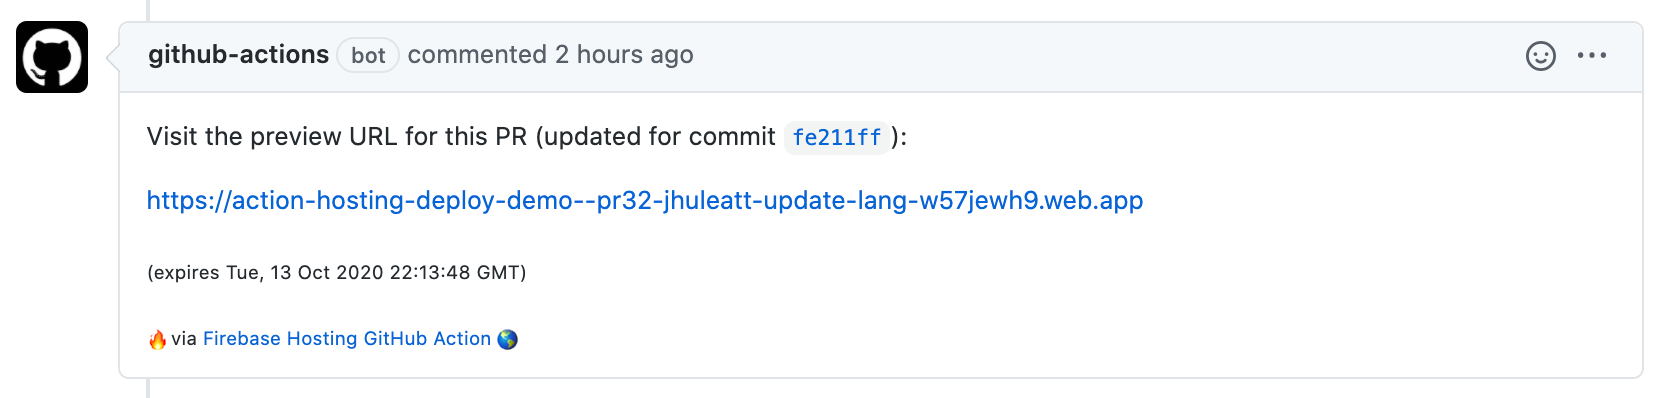 gambar komentar permintaan pull GitHub Action dengan URL pratinjau